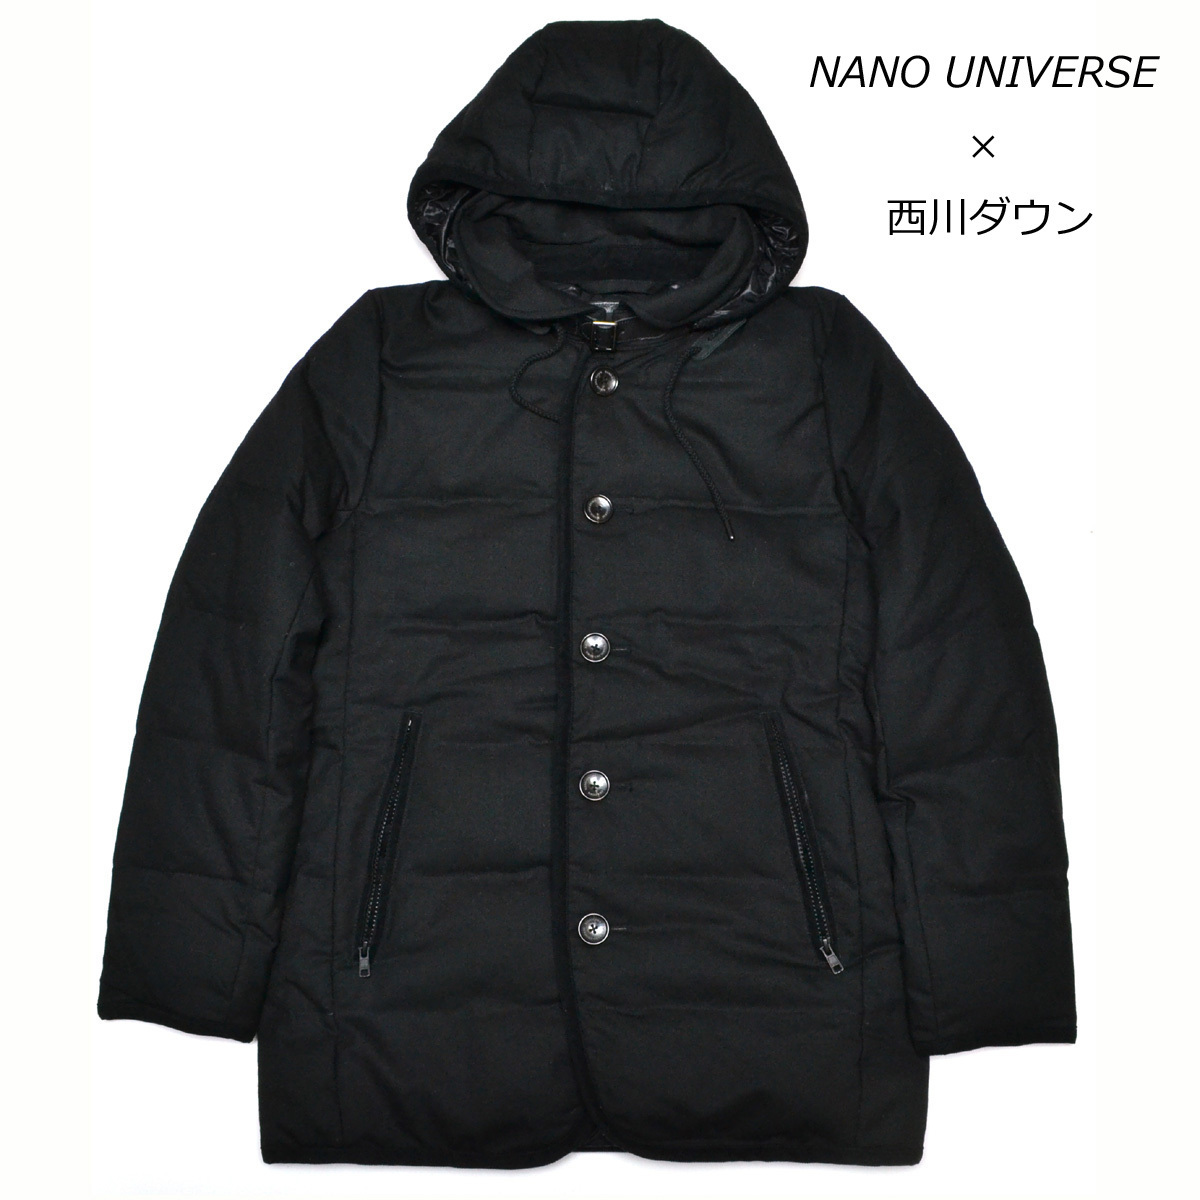 M354354 定価39800円 NANO UNIVERSE × 西川ダウン ウールシングルコート フード Sサイズ メンズ フードダウンジャケット ナノユニバース